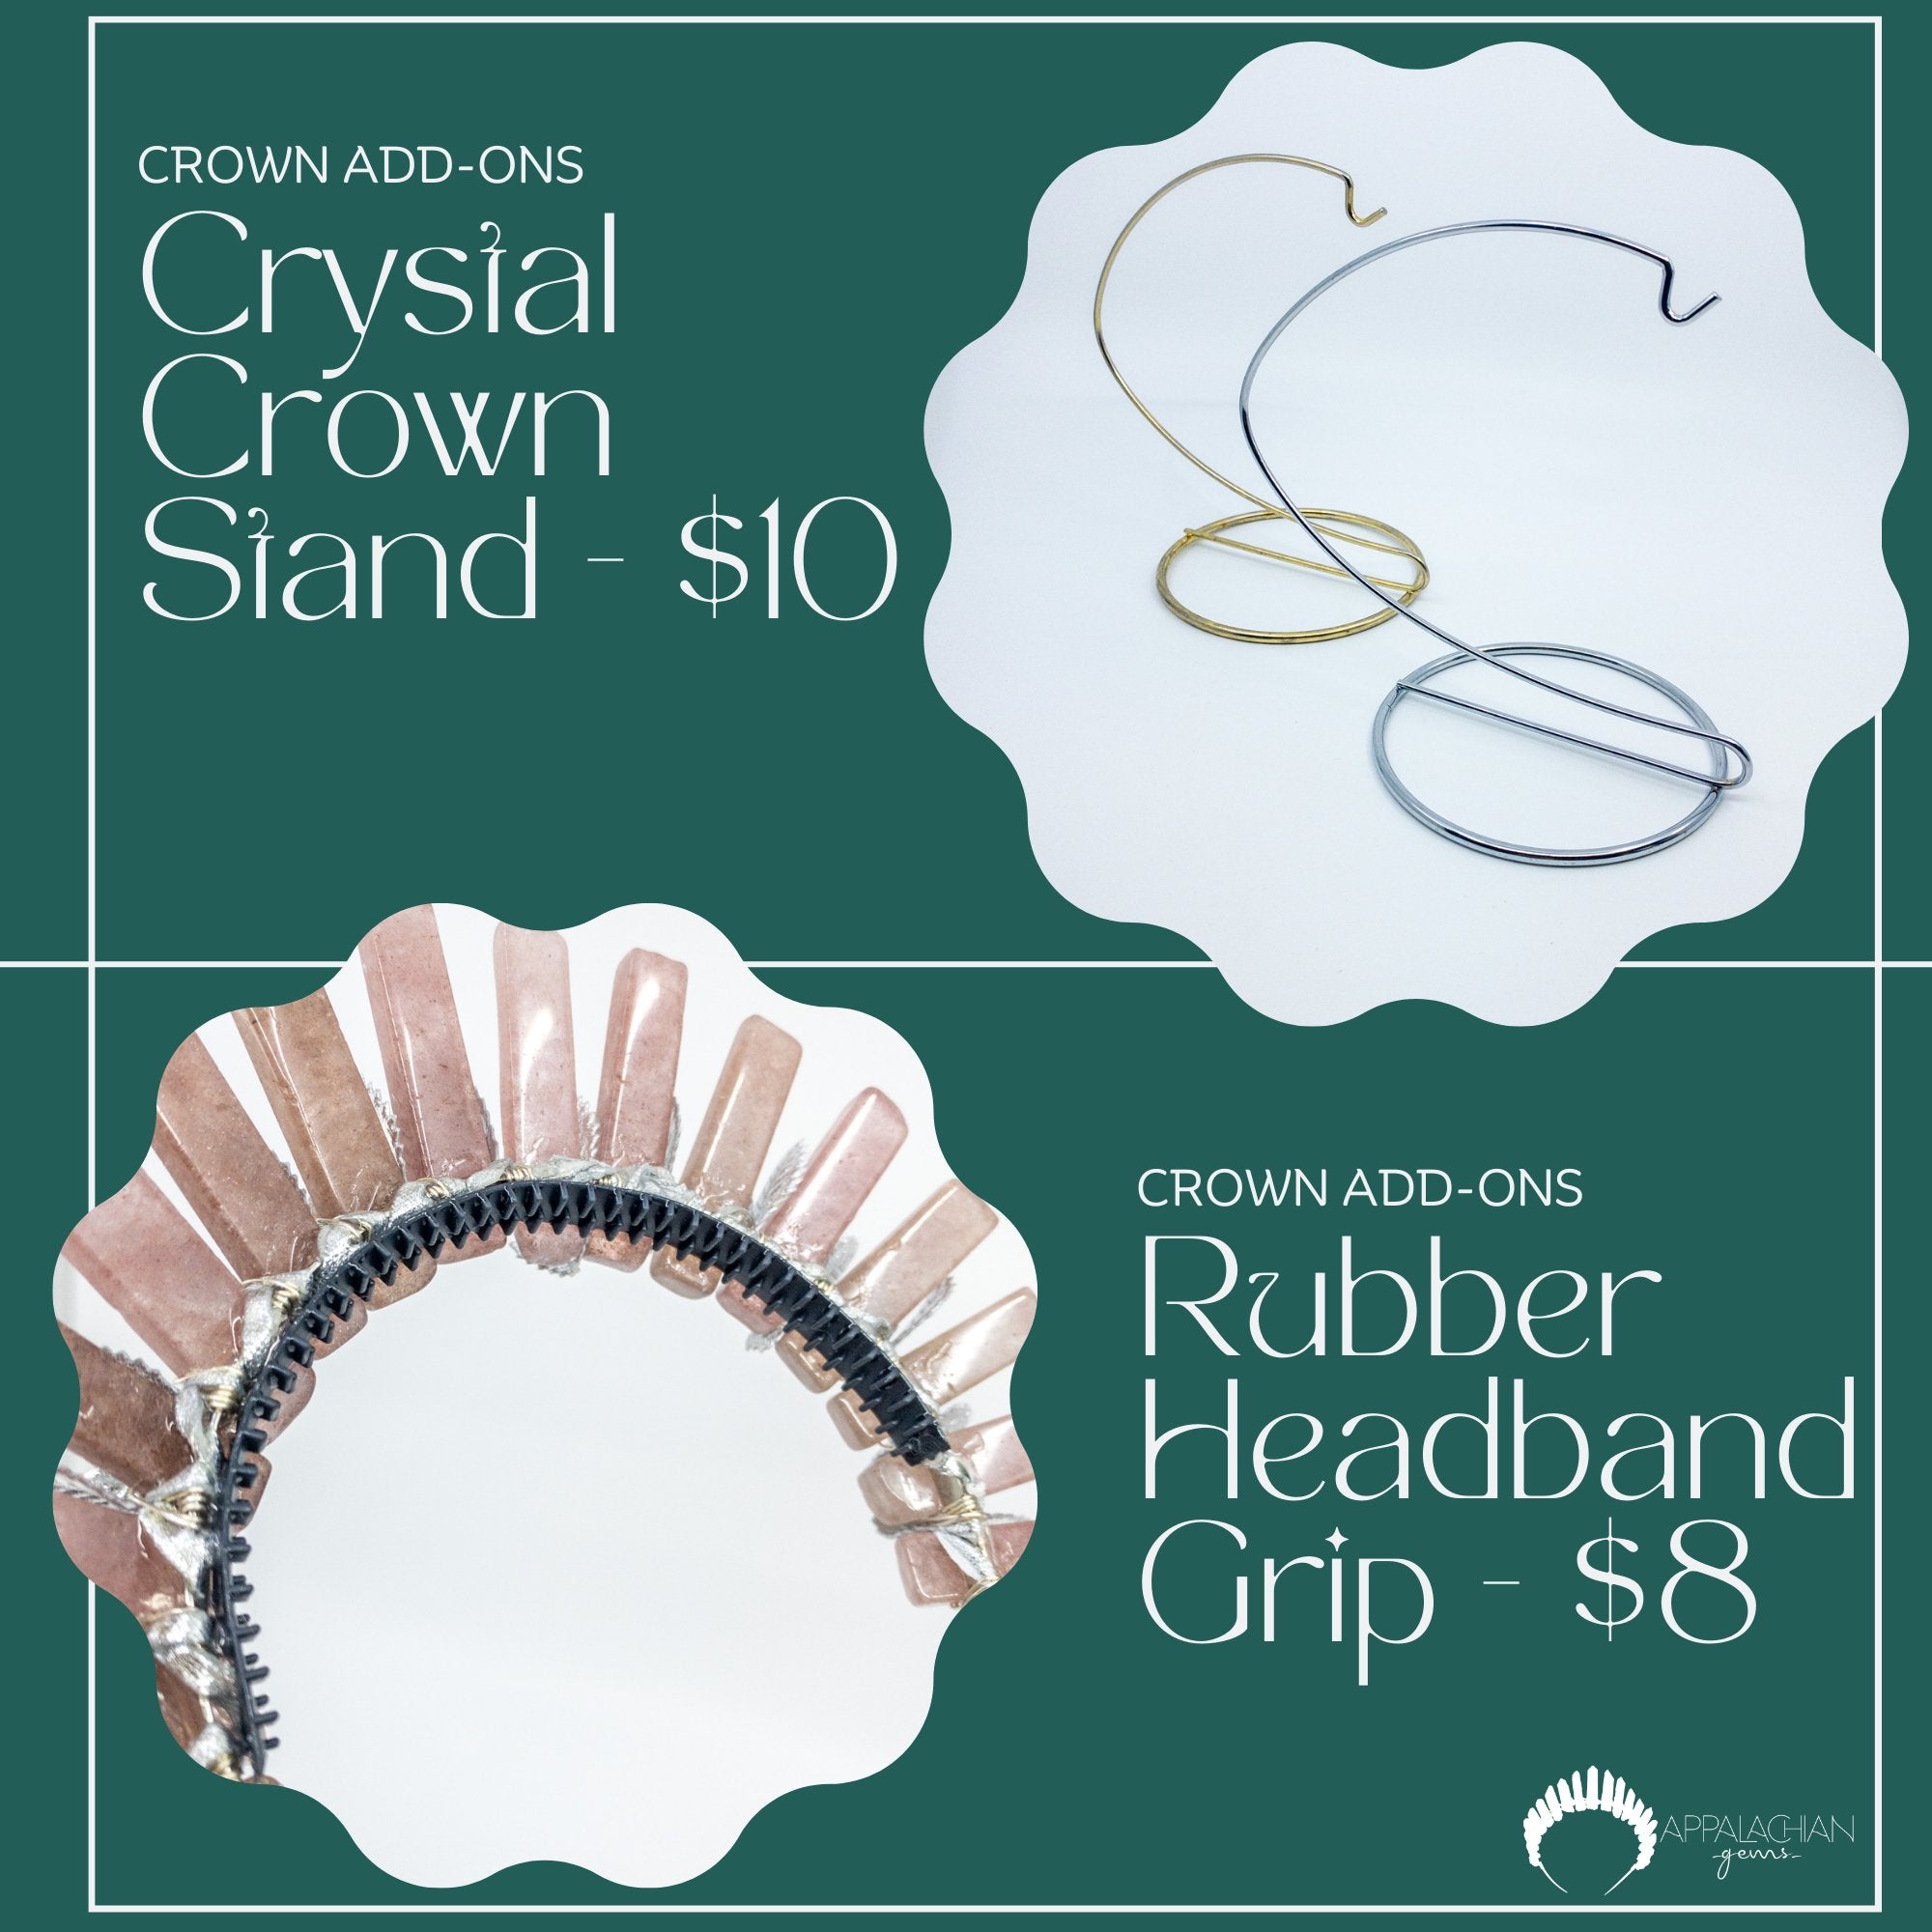 Howlite Crystal Goddess Crown - Appalachian Gems